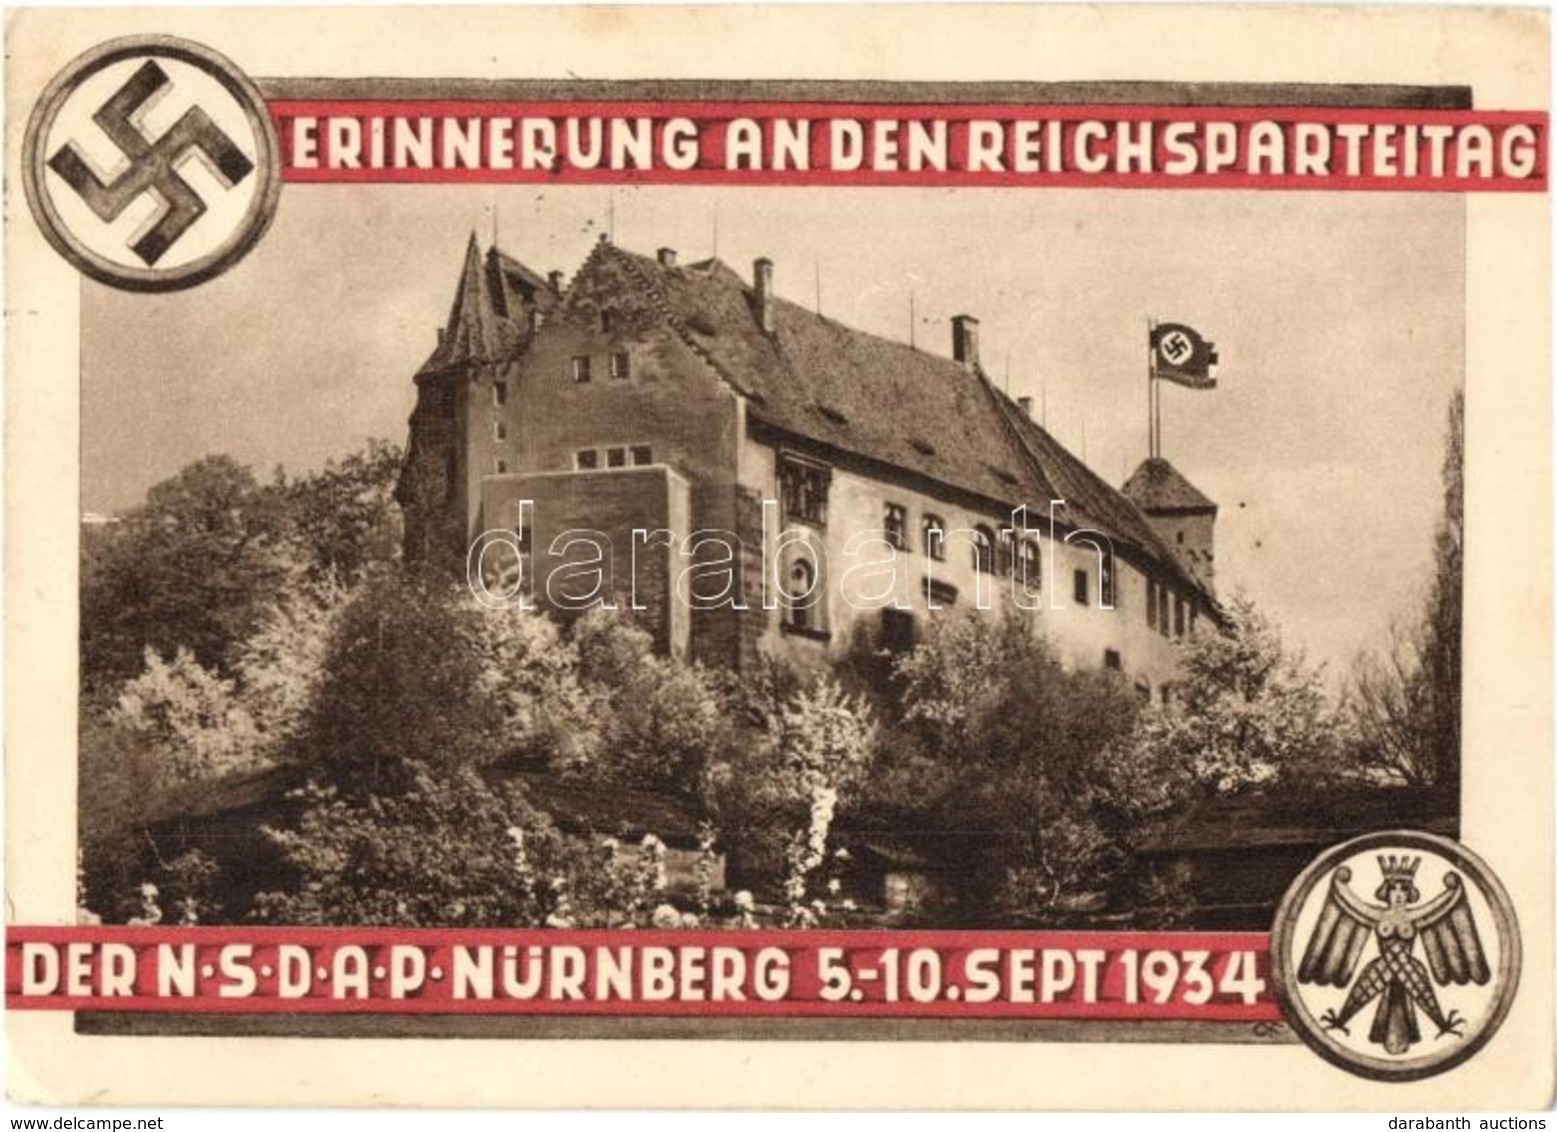 * T2/T3 1934 Erinnerung An Den Reichsparteitag Der NSDAP Nürnberg / NSDAP German Nazi Party Propaganda, Nuremberg Rally, - Unclassified